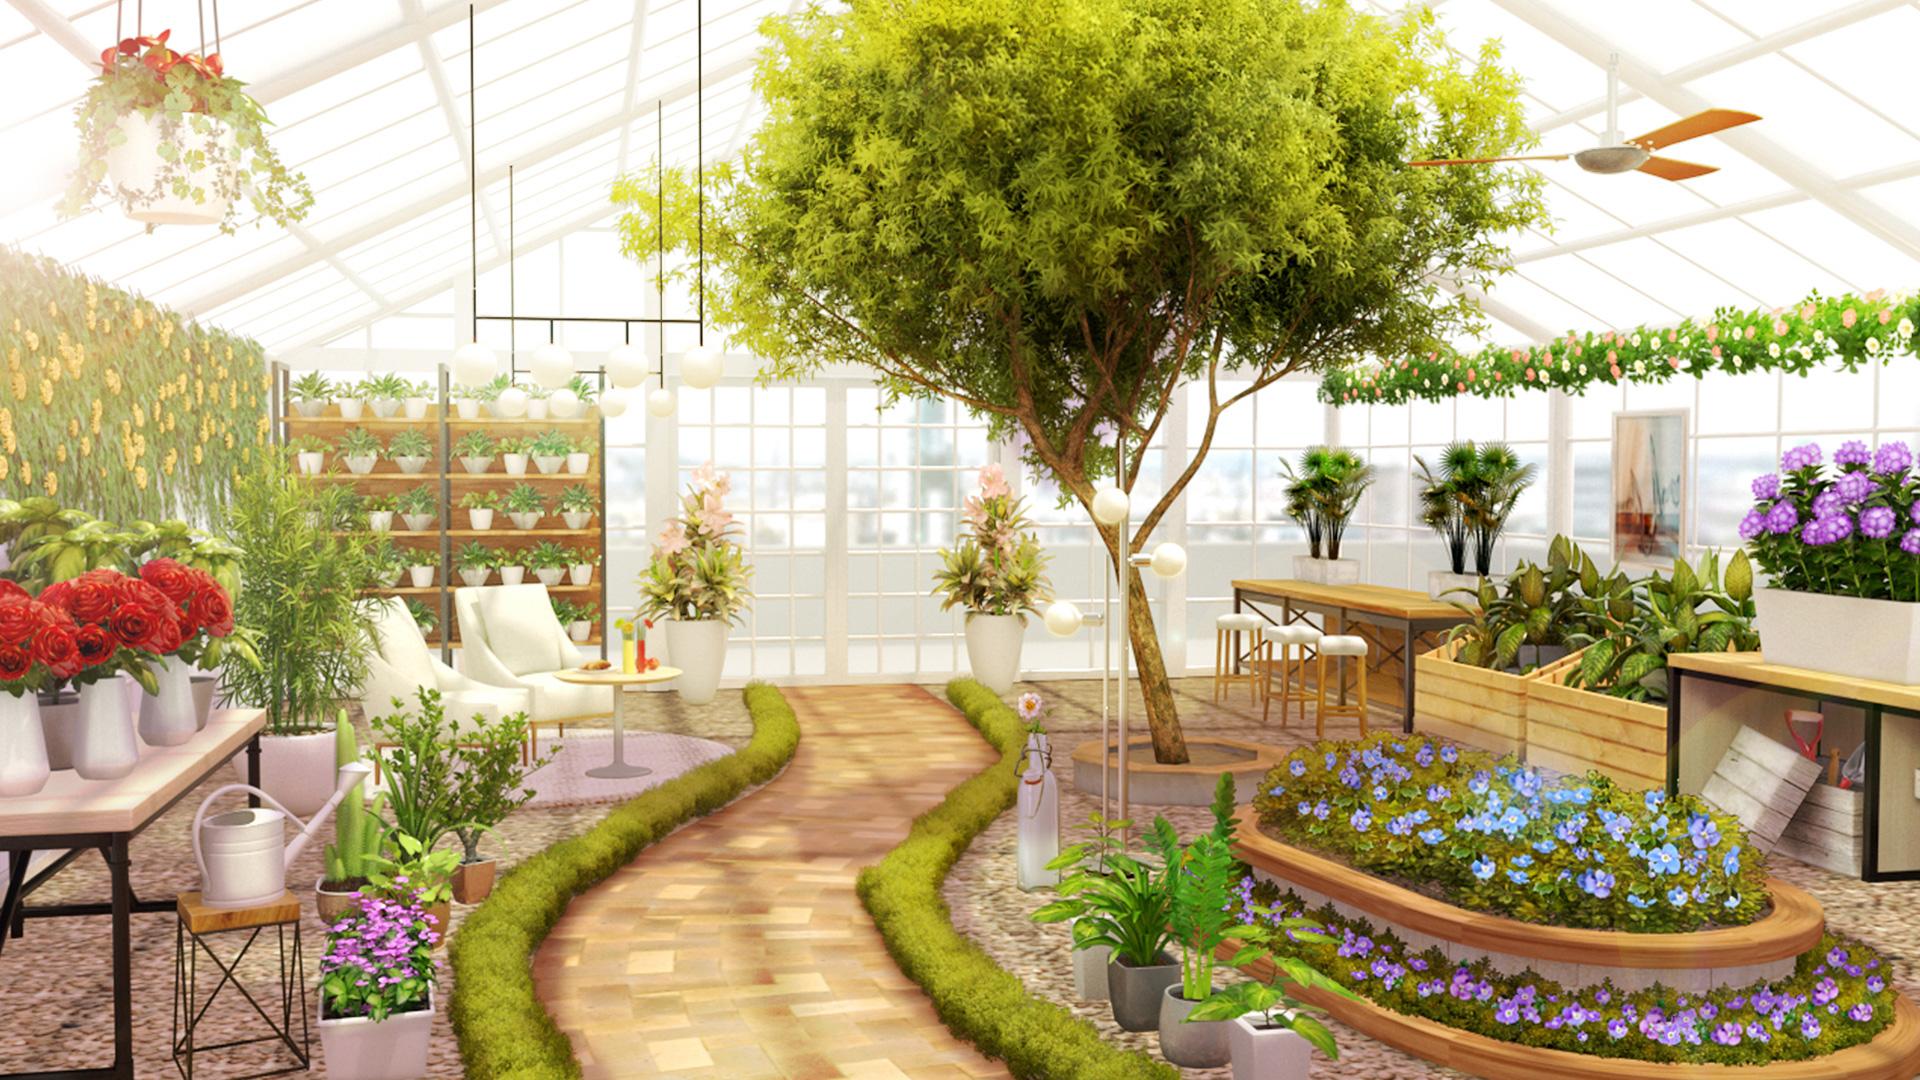 Home Design : My Dream Garden 1.21.0 Screenshot 14